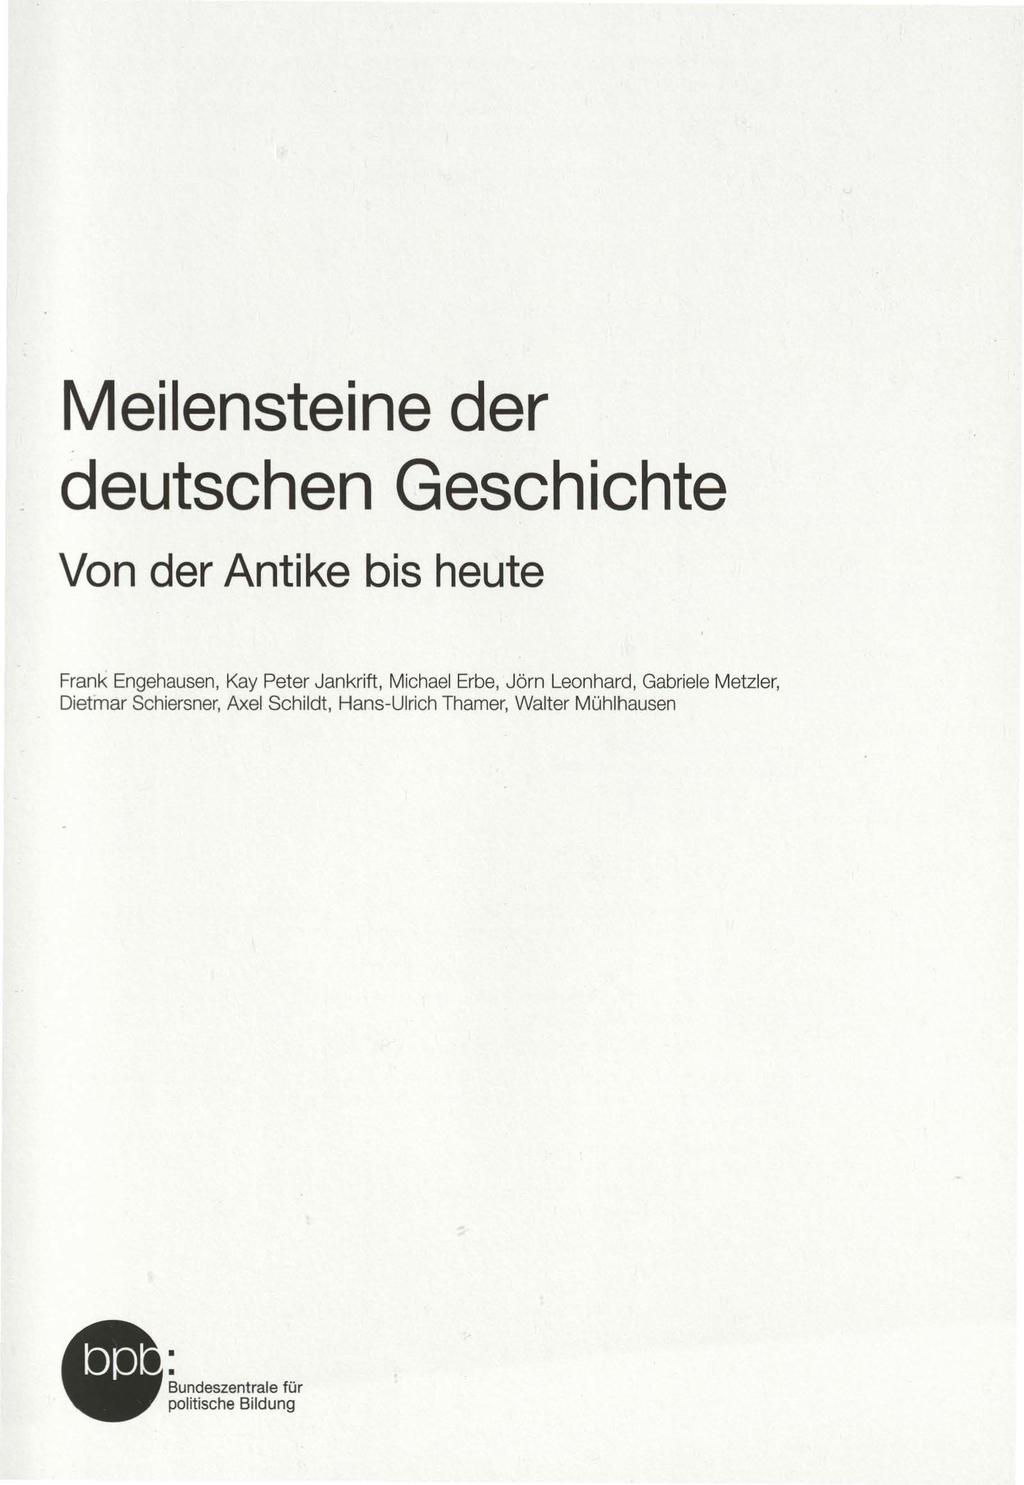 Deutsche Geschichte Pdf - Deutsche Geschichte In Daten Pdf Epub Ebook - Der jüngste ...